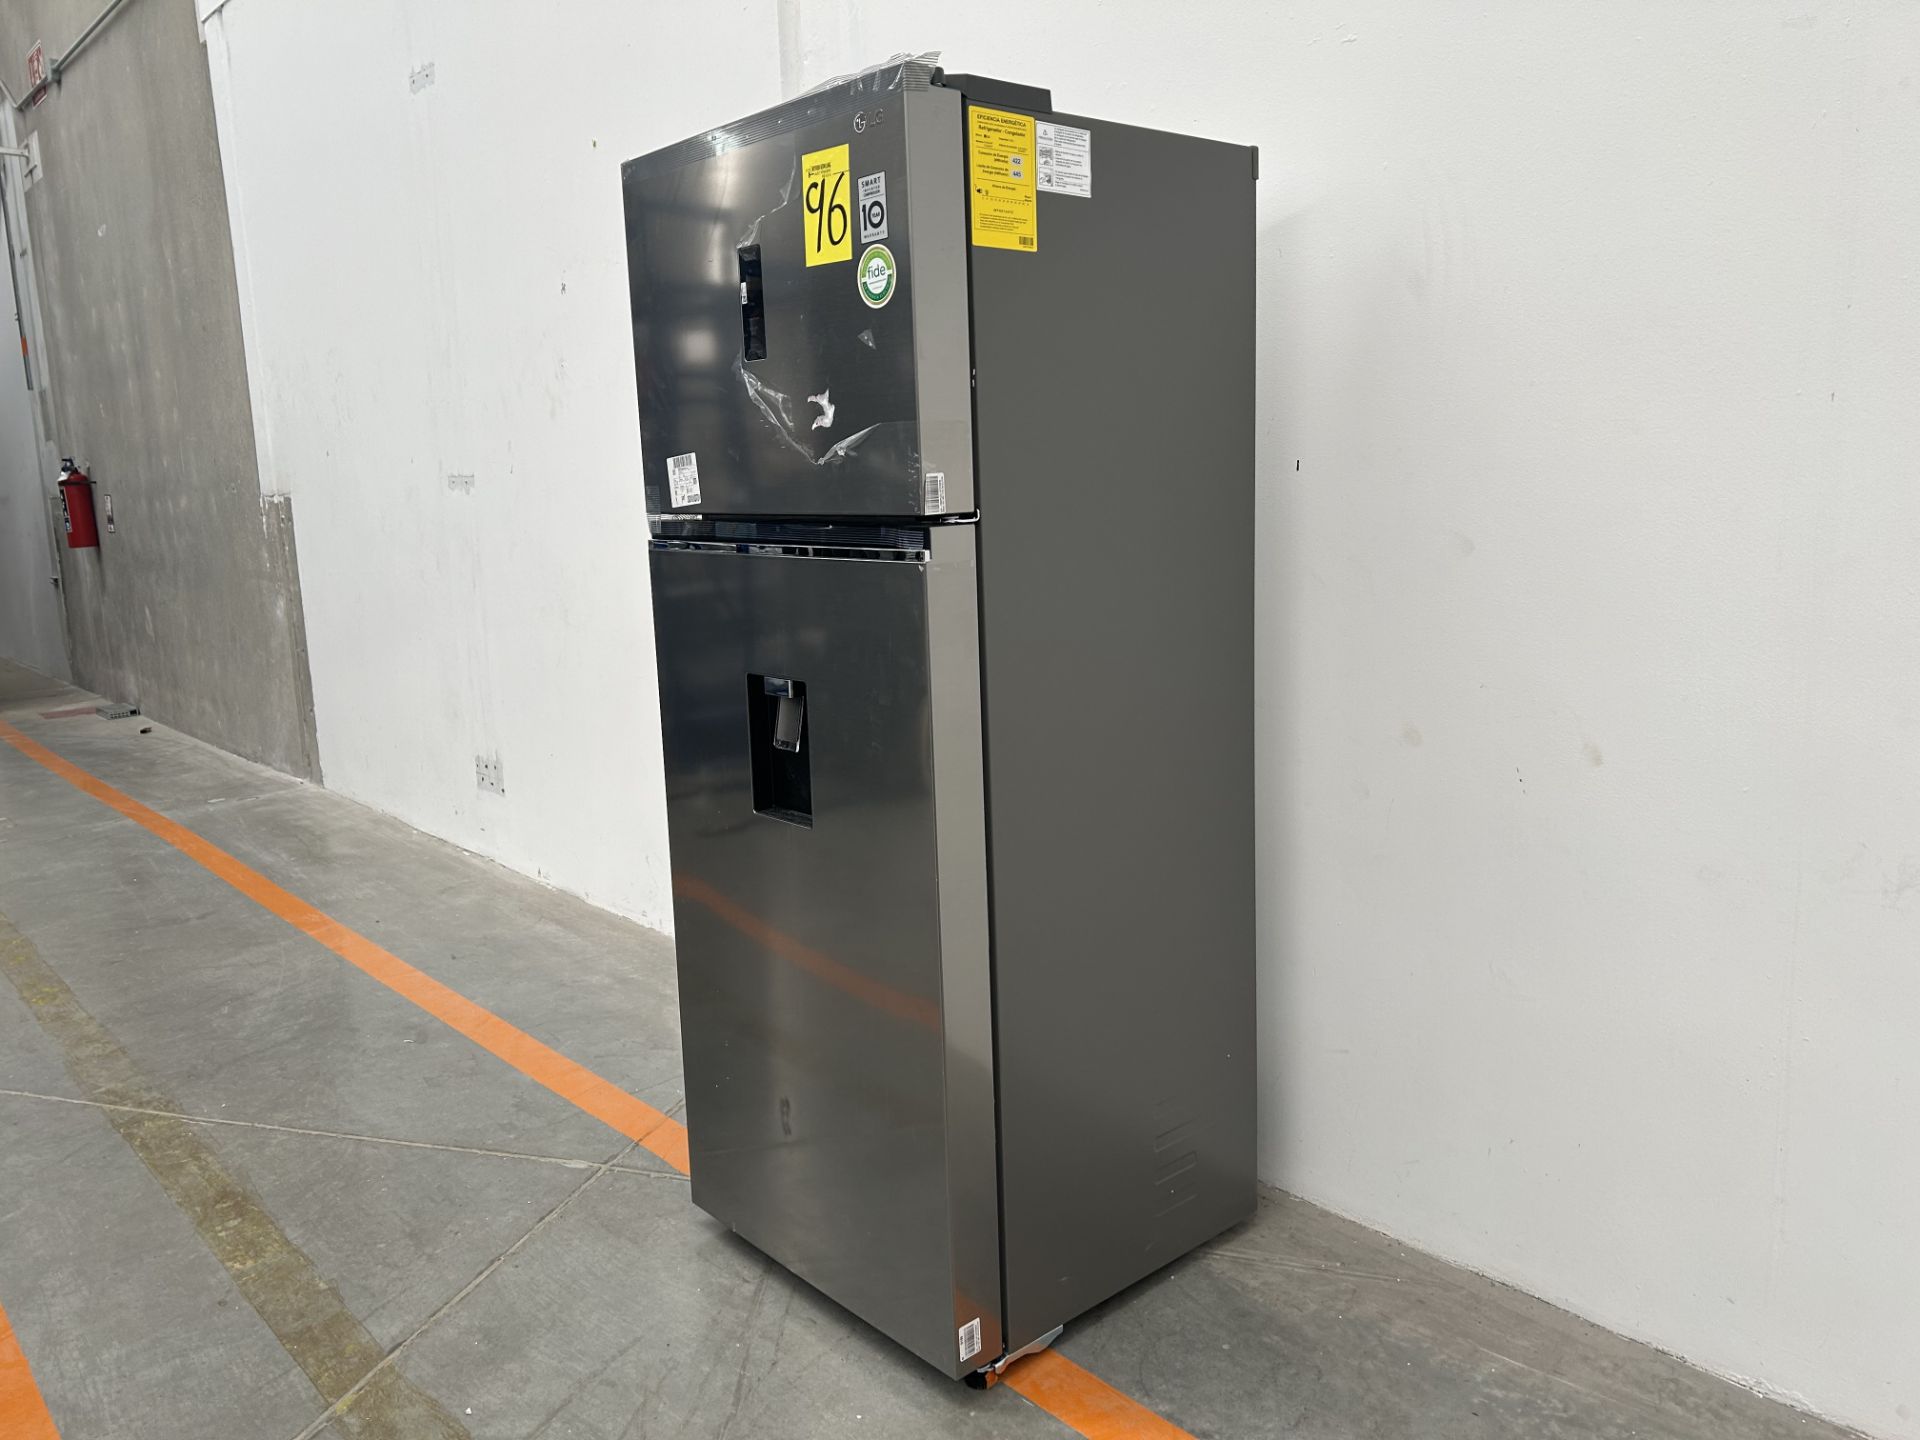 (NUEVO) Refrigerador con dispensador de agua Marca LG, Modelo VT40AWP, Serie L1S381, Color GRIS - Bild 3 aus 5